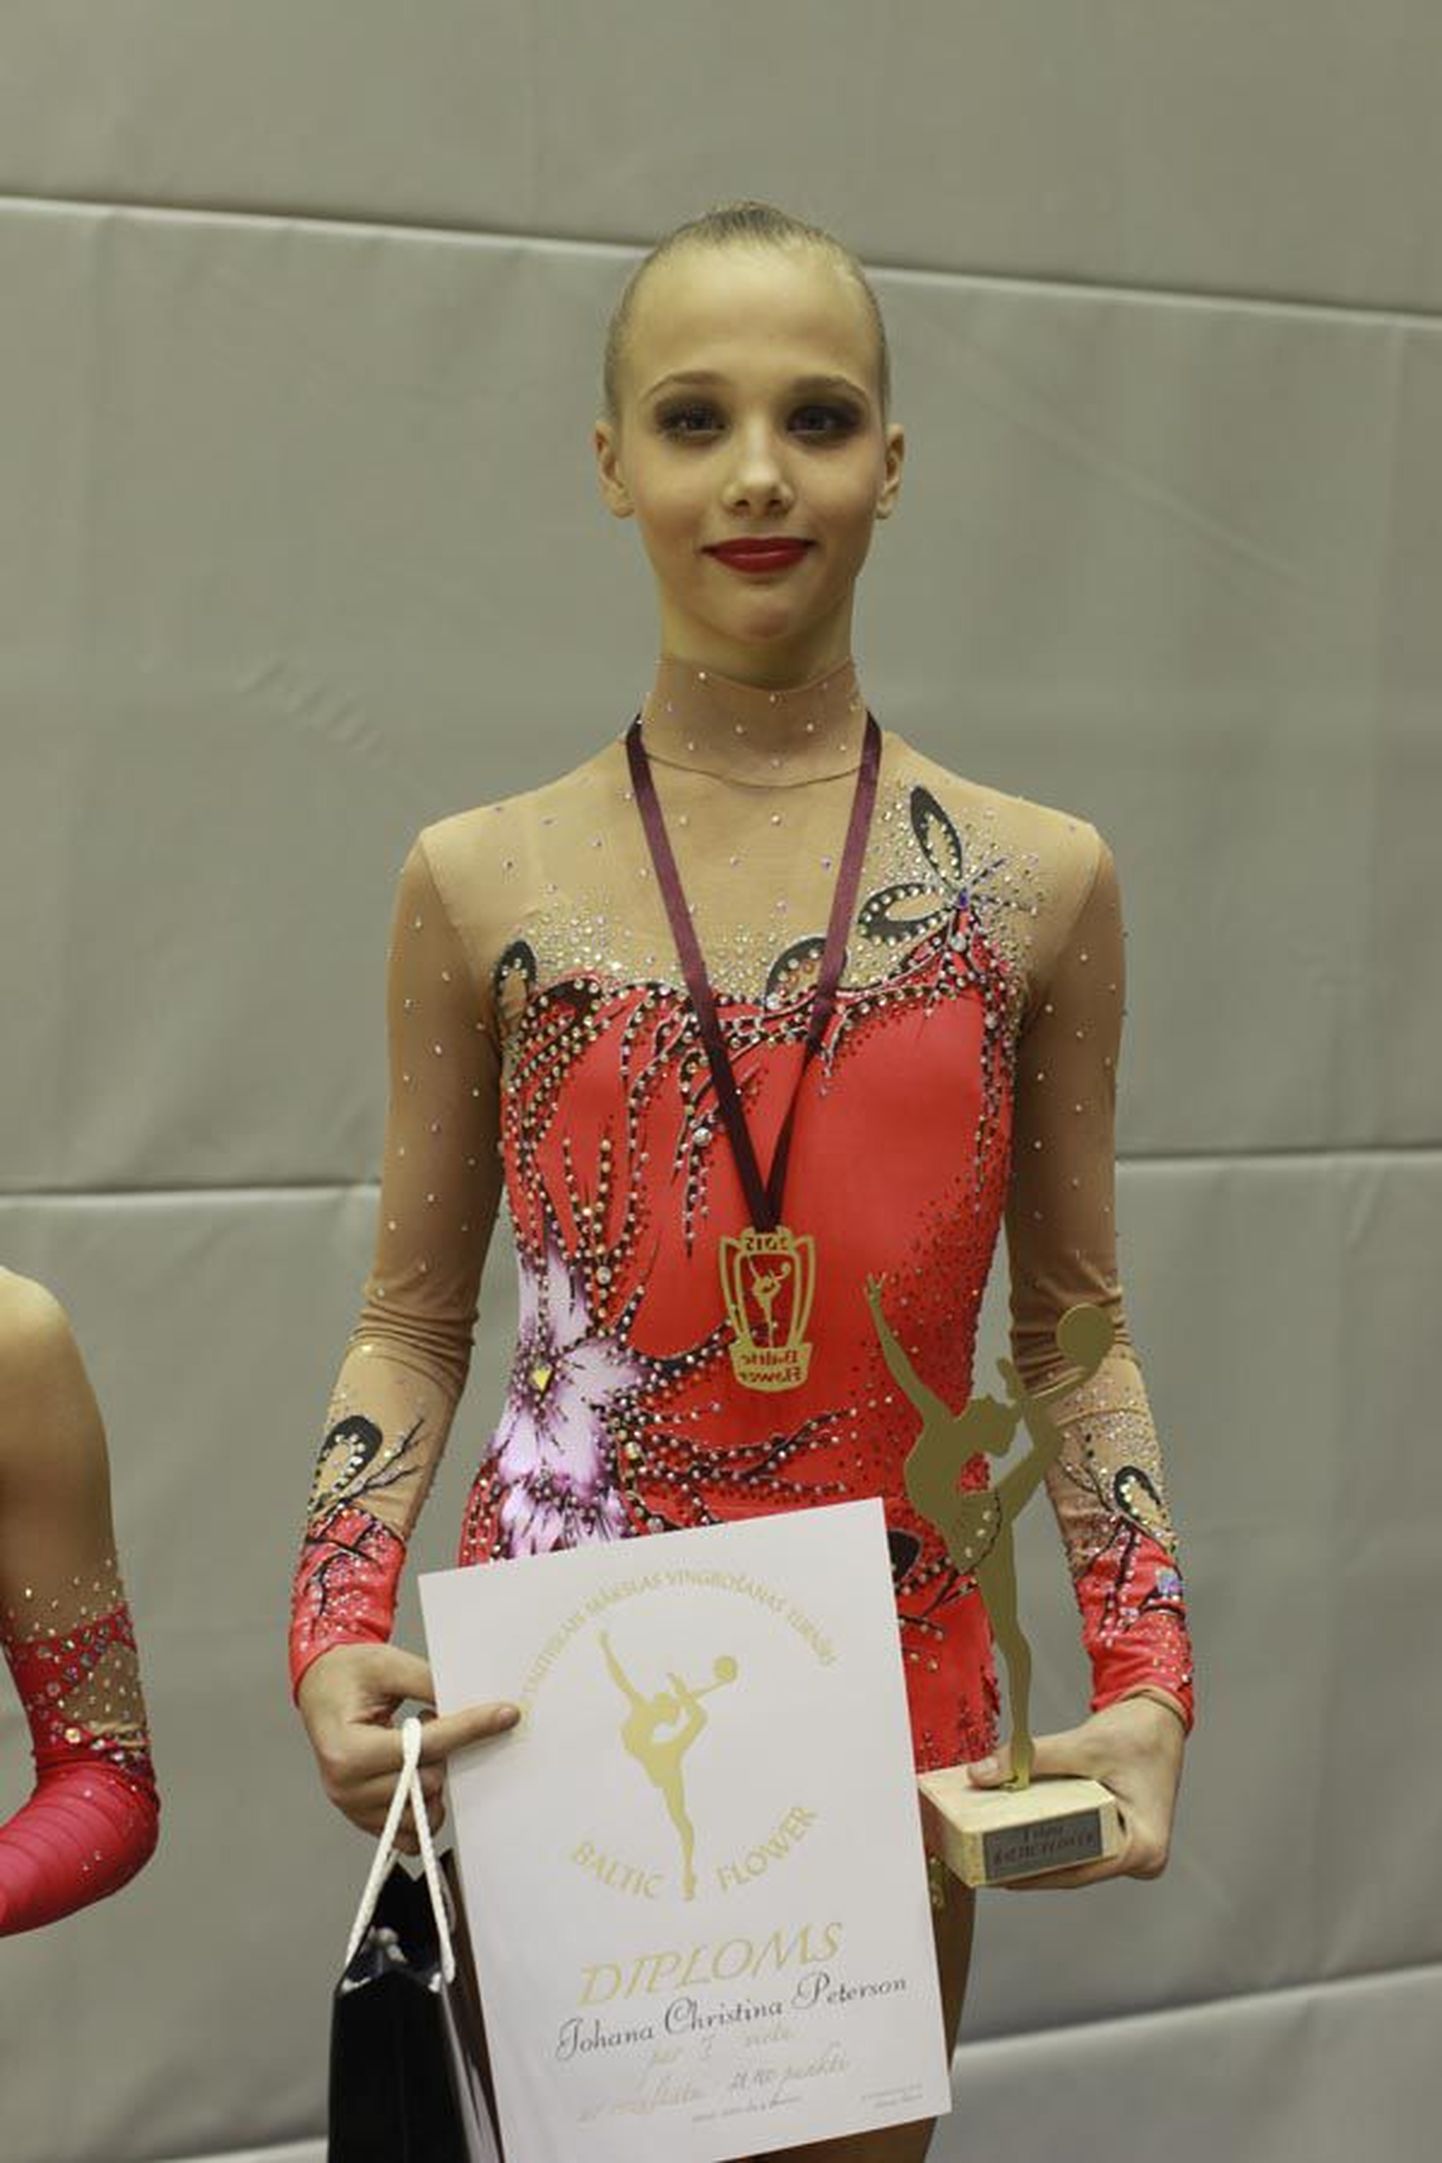 Viljandi spordikooli iluvõimleja Johanna Christina Peterson võitis Lätis tugeva tasemega rahvusvahelise mõõduvõtu.